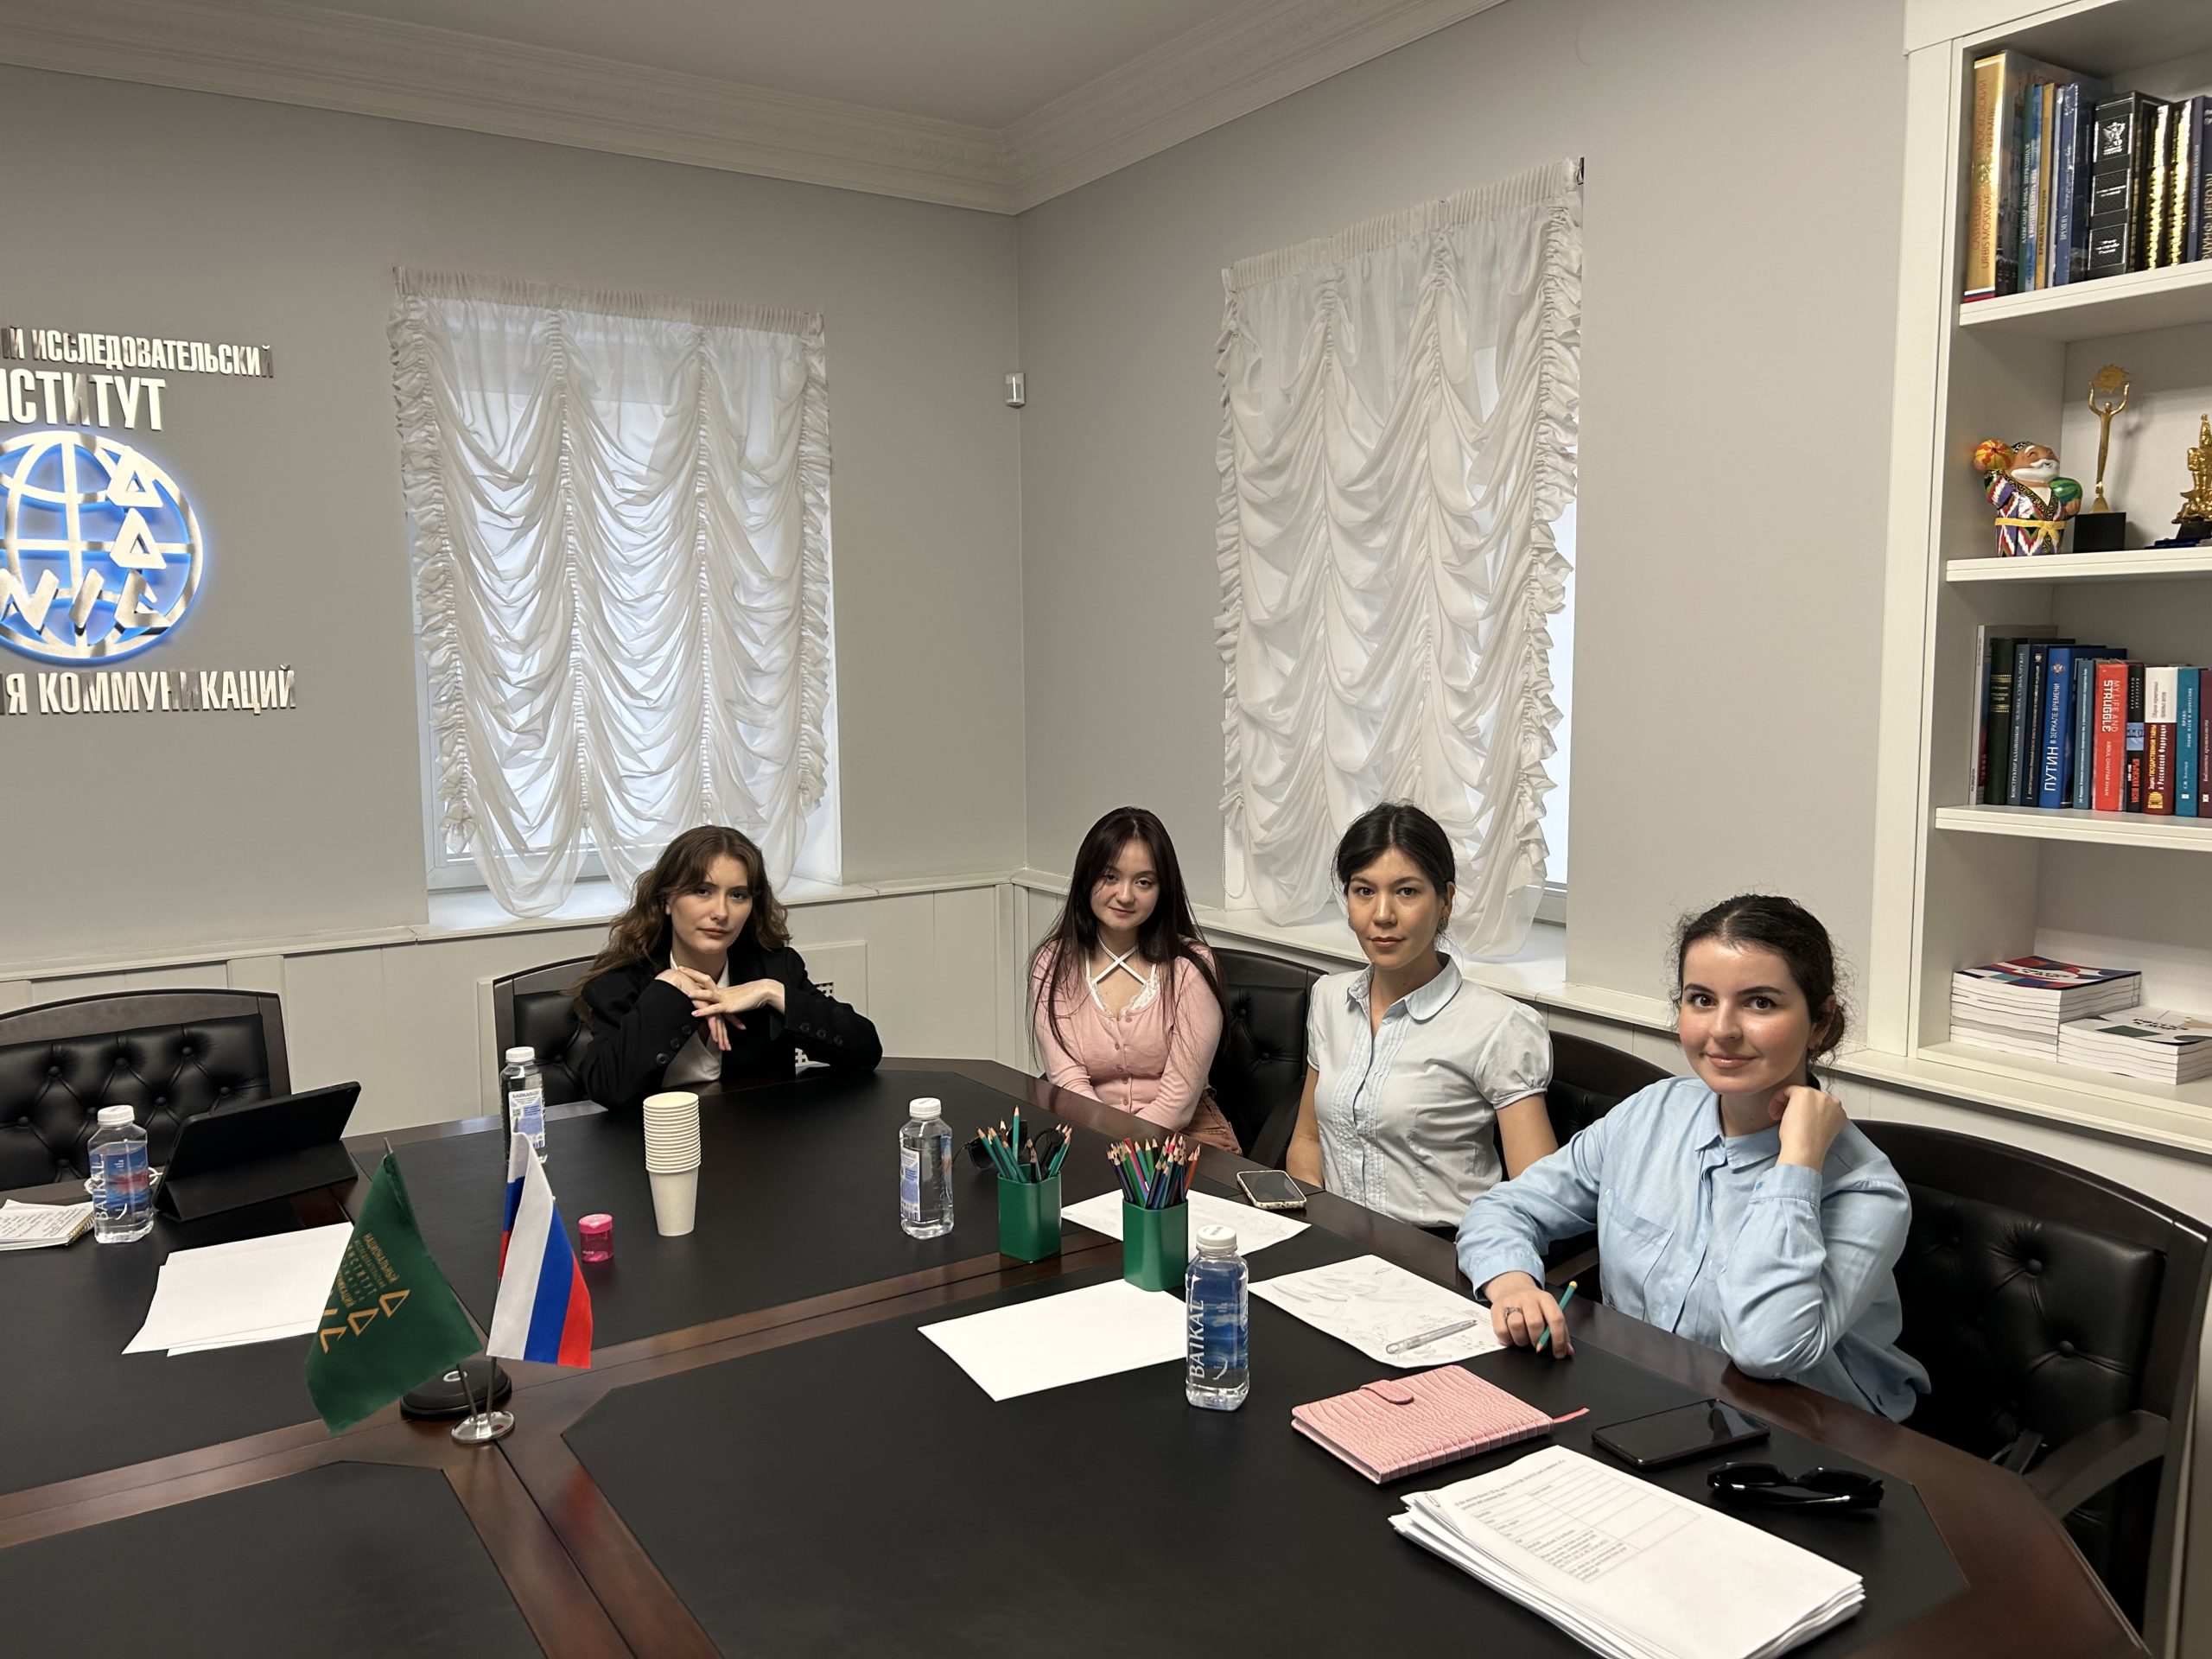 НИИРК – Форсайт-сессия с представителями молодежи Узбекистана